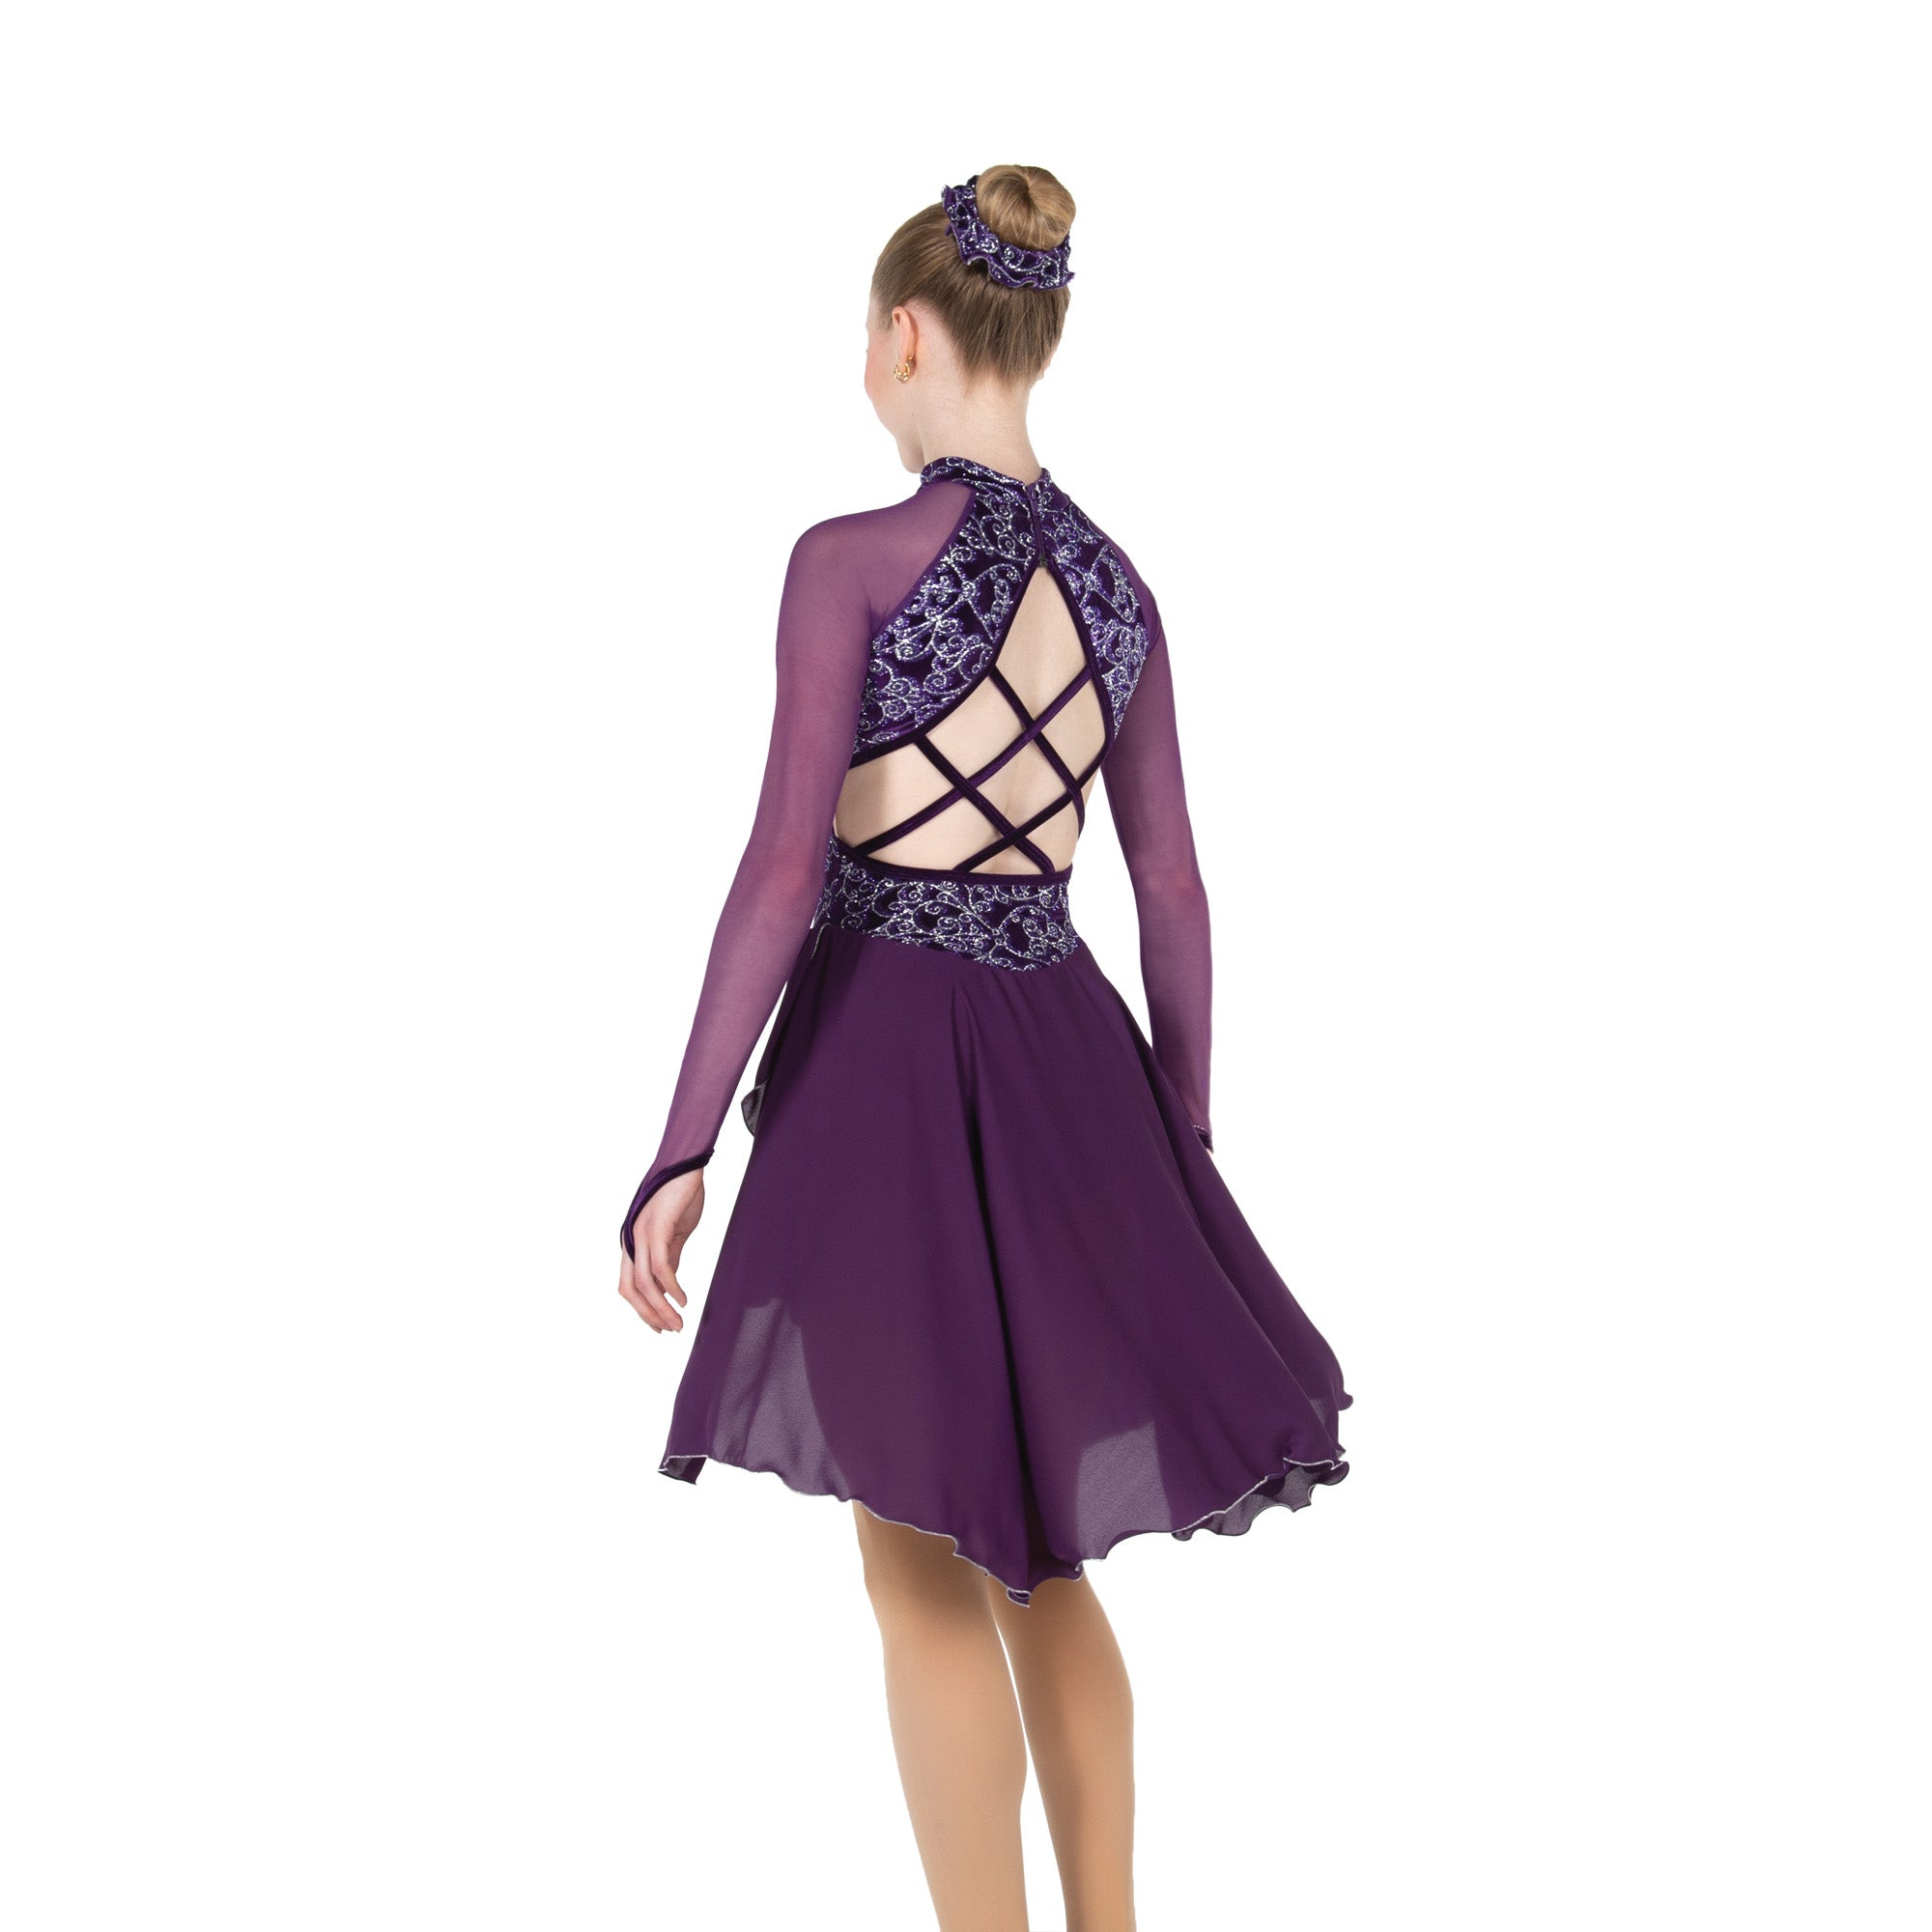 100 Trellistep Dance Dress in Purple by Jerry's